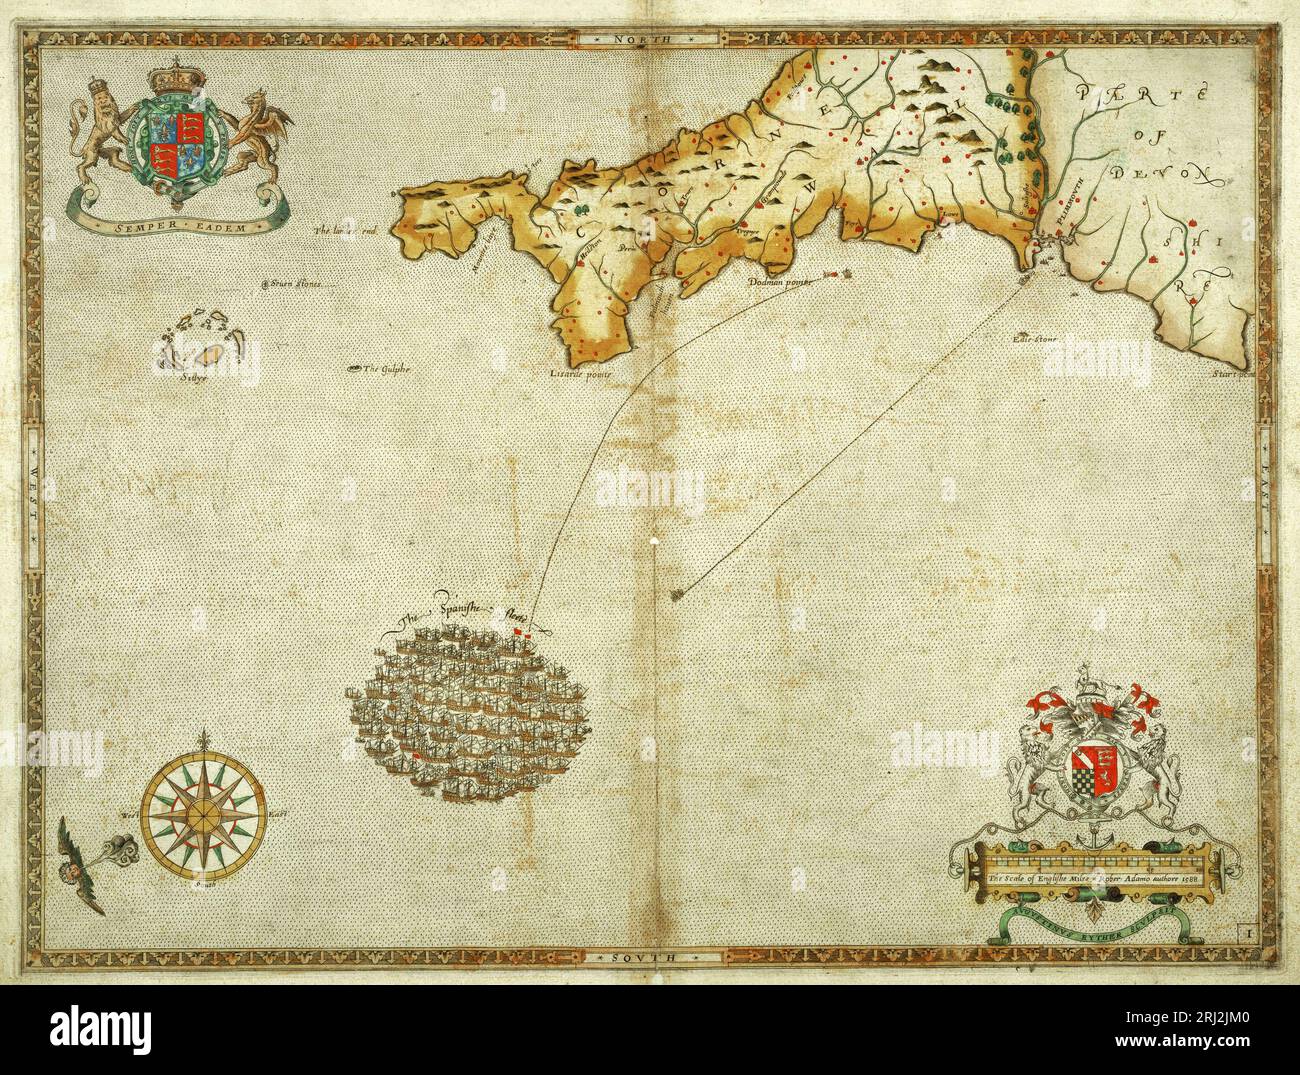 La flotte espagnole de l'Armada au large des côtes de Cornouailles le 29 juillet 1588, comme indiqué sur une carte faite en 1590, deux ans seulement après la défaite de l'Armada espagnole le 8 août 1588 Banque D'Images